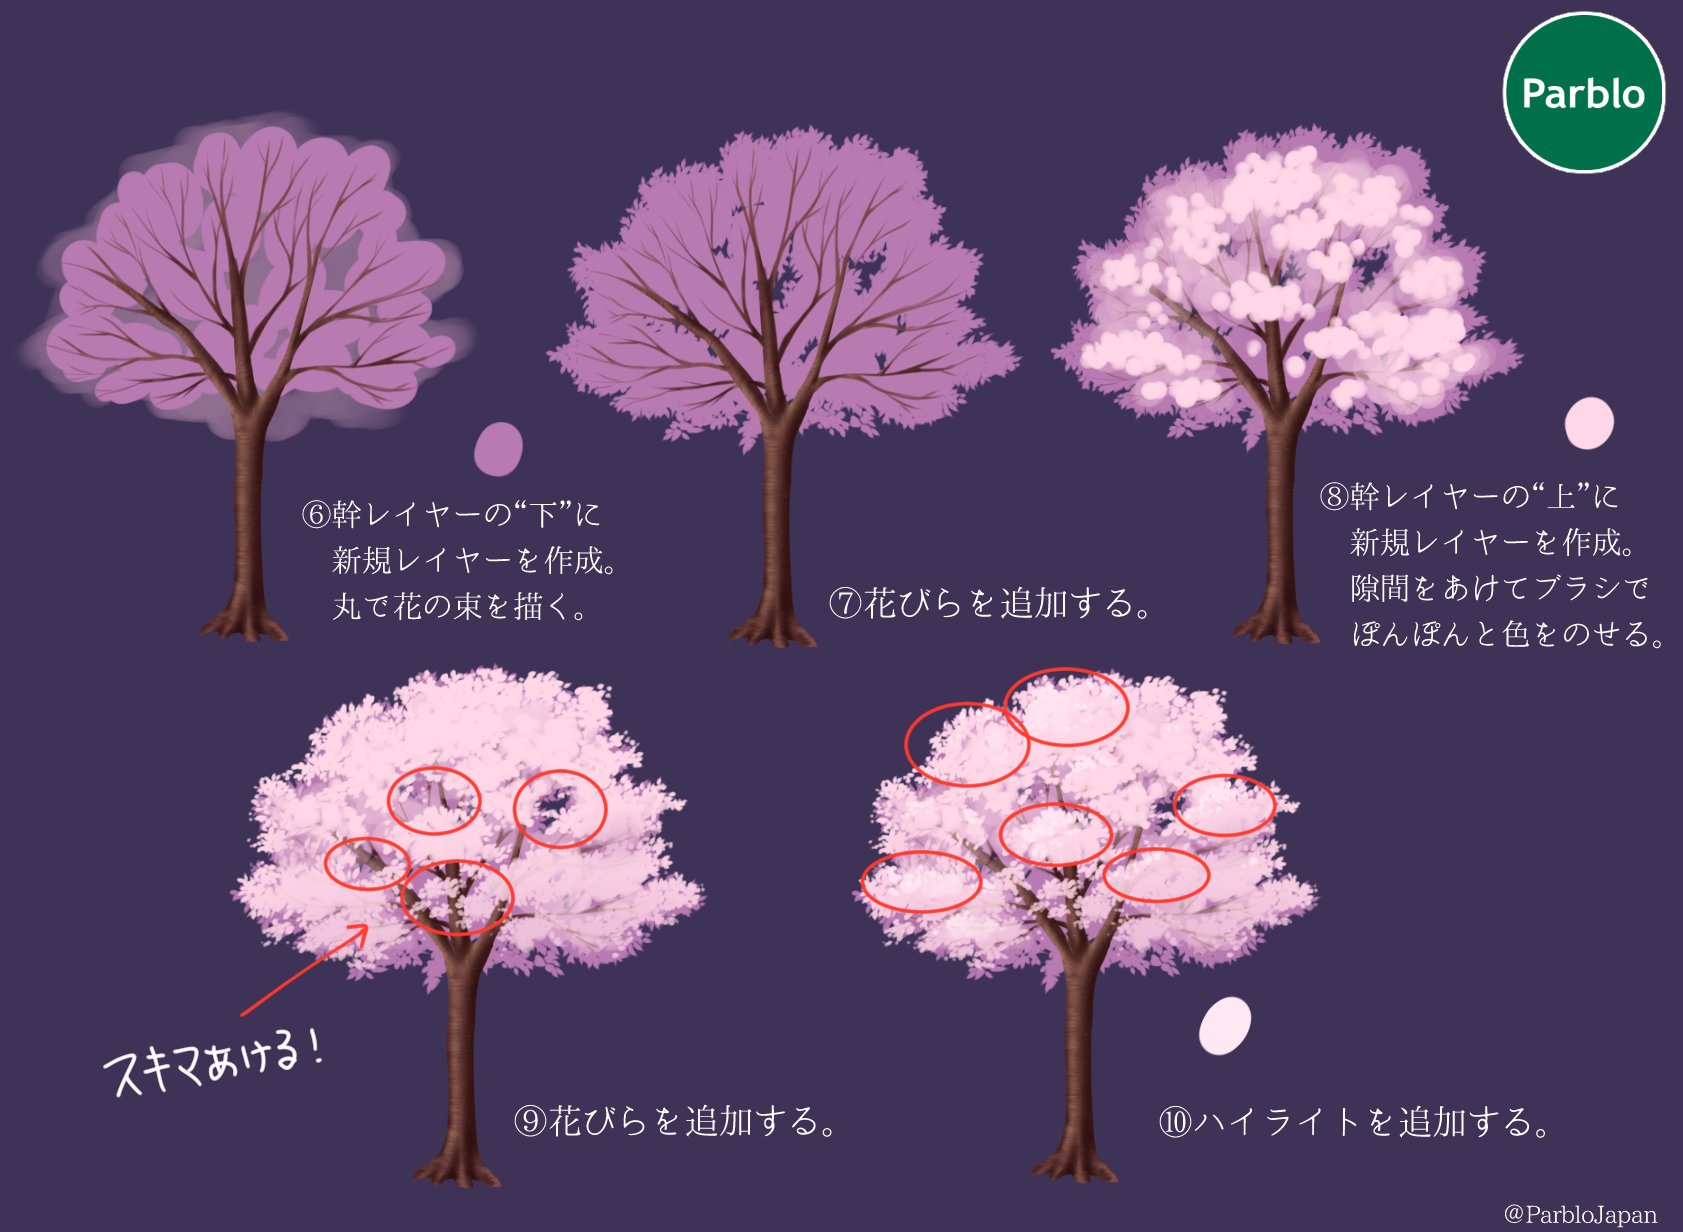 Parblo Japan 暖かくなりましたね イラストでお花見しよう 本日は満開の桜の描き方 桜いっぱいのイラストに挑戦してみよう イラスト好きと繋がりたい 絵描きさんと繋がりたい Parblo 桜 T Co Jyj30utxqk Twitter